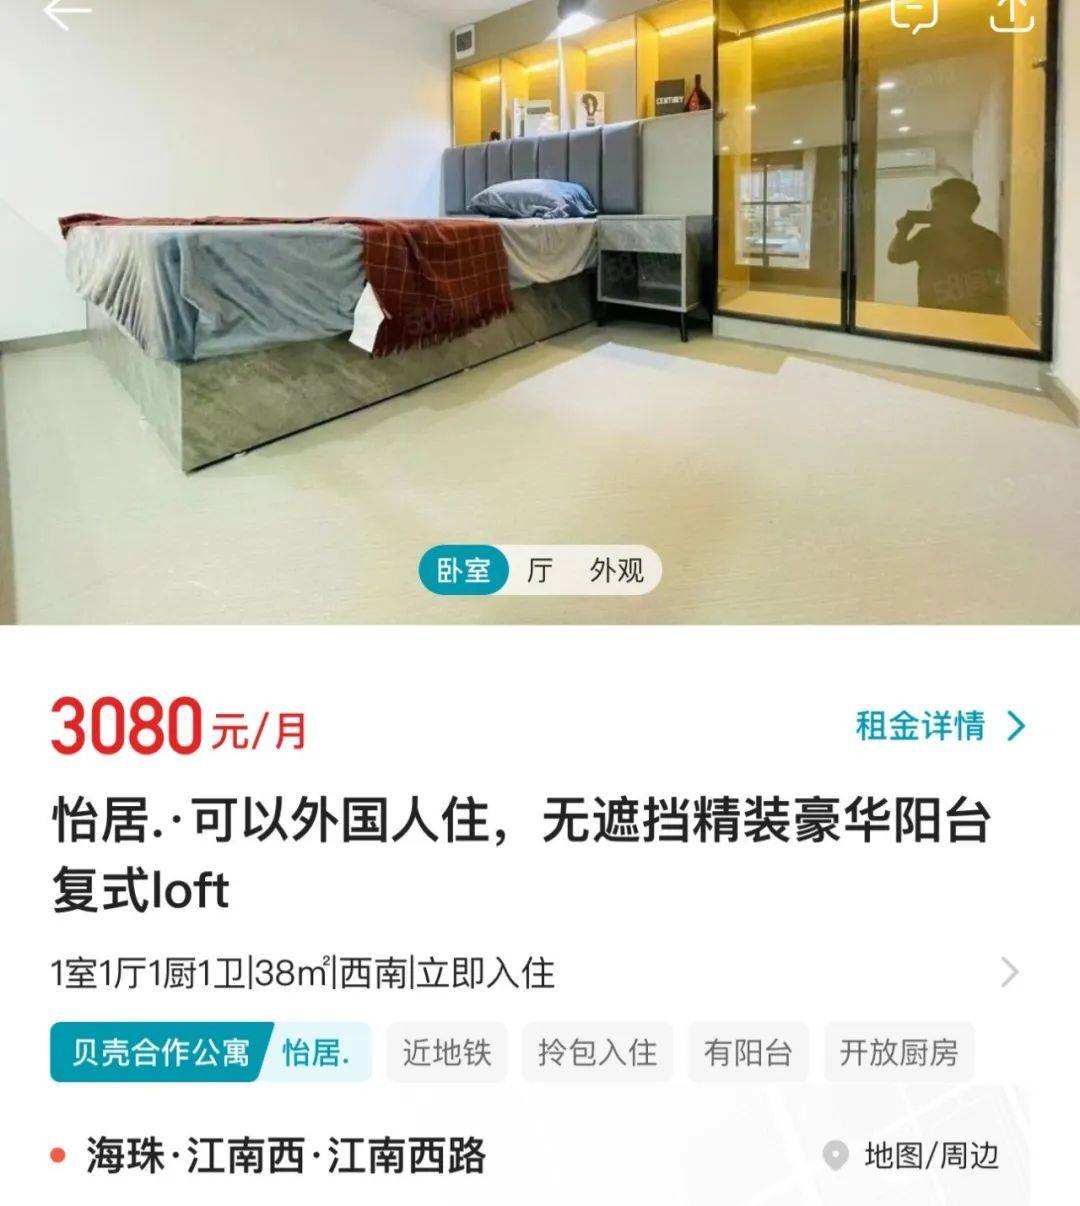 像我上面举例的江南西小两房,位于广州繁华地段,大单间都可以租到3000